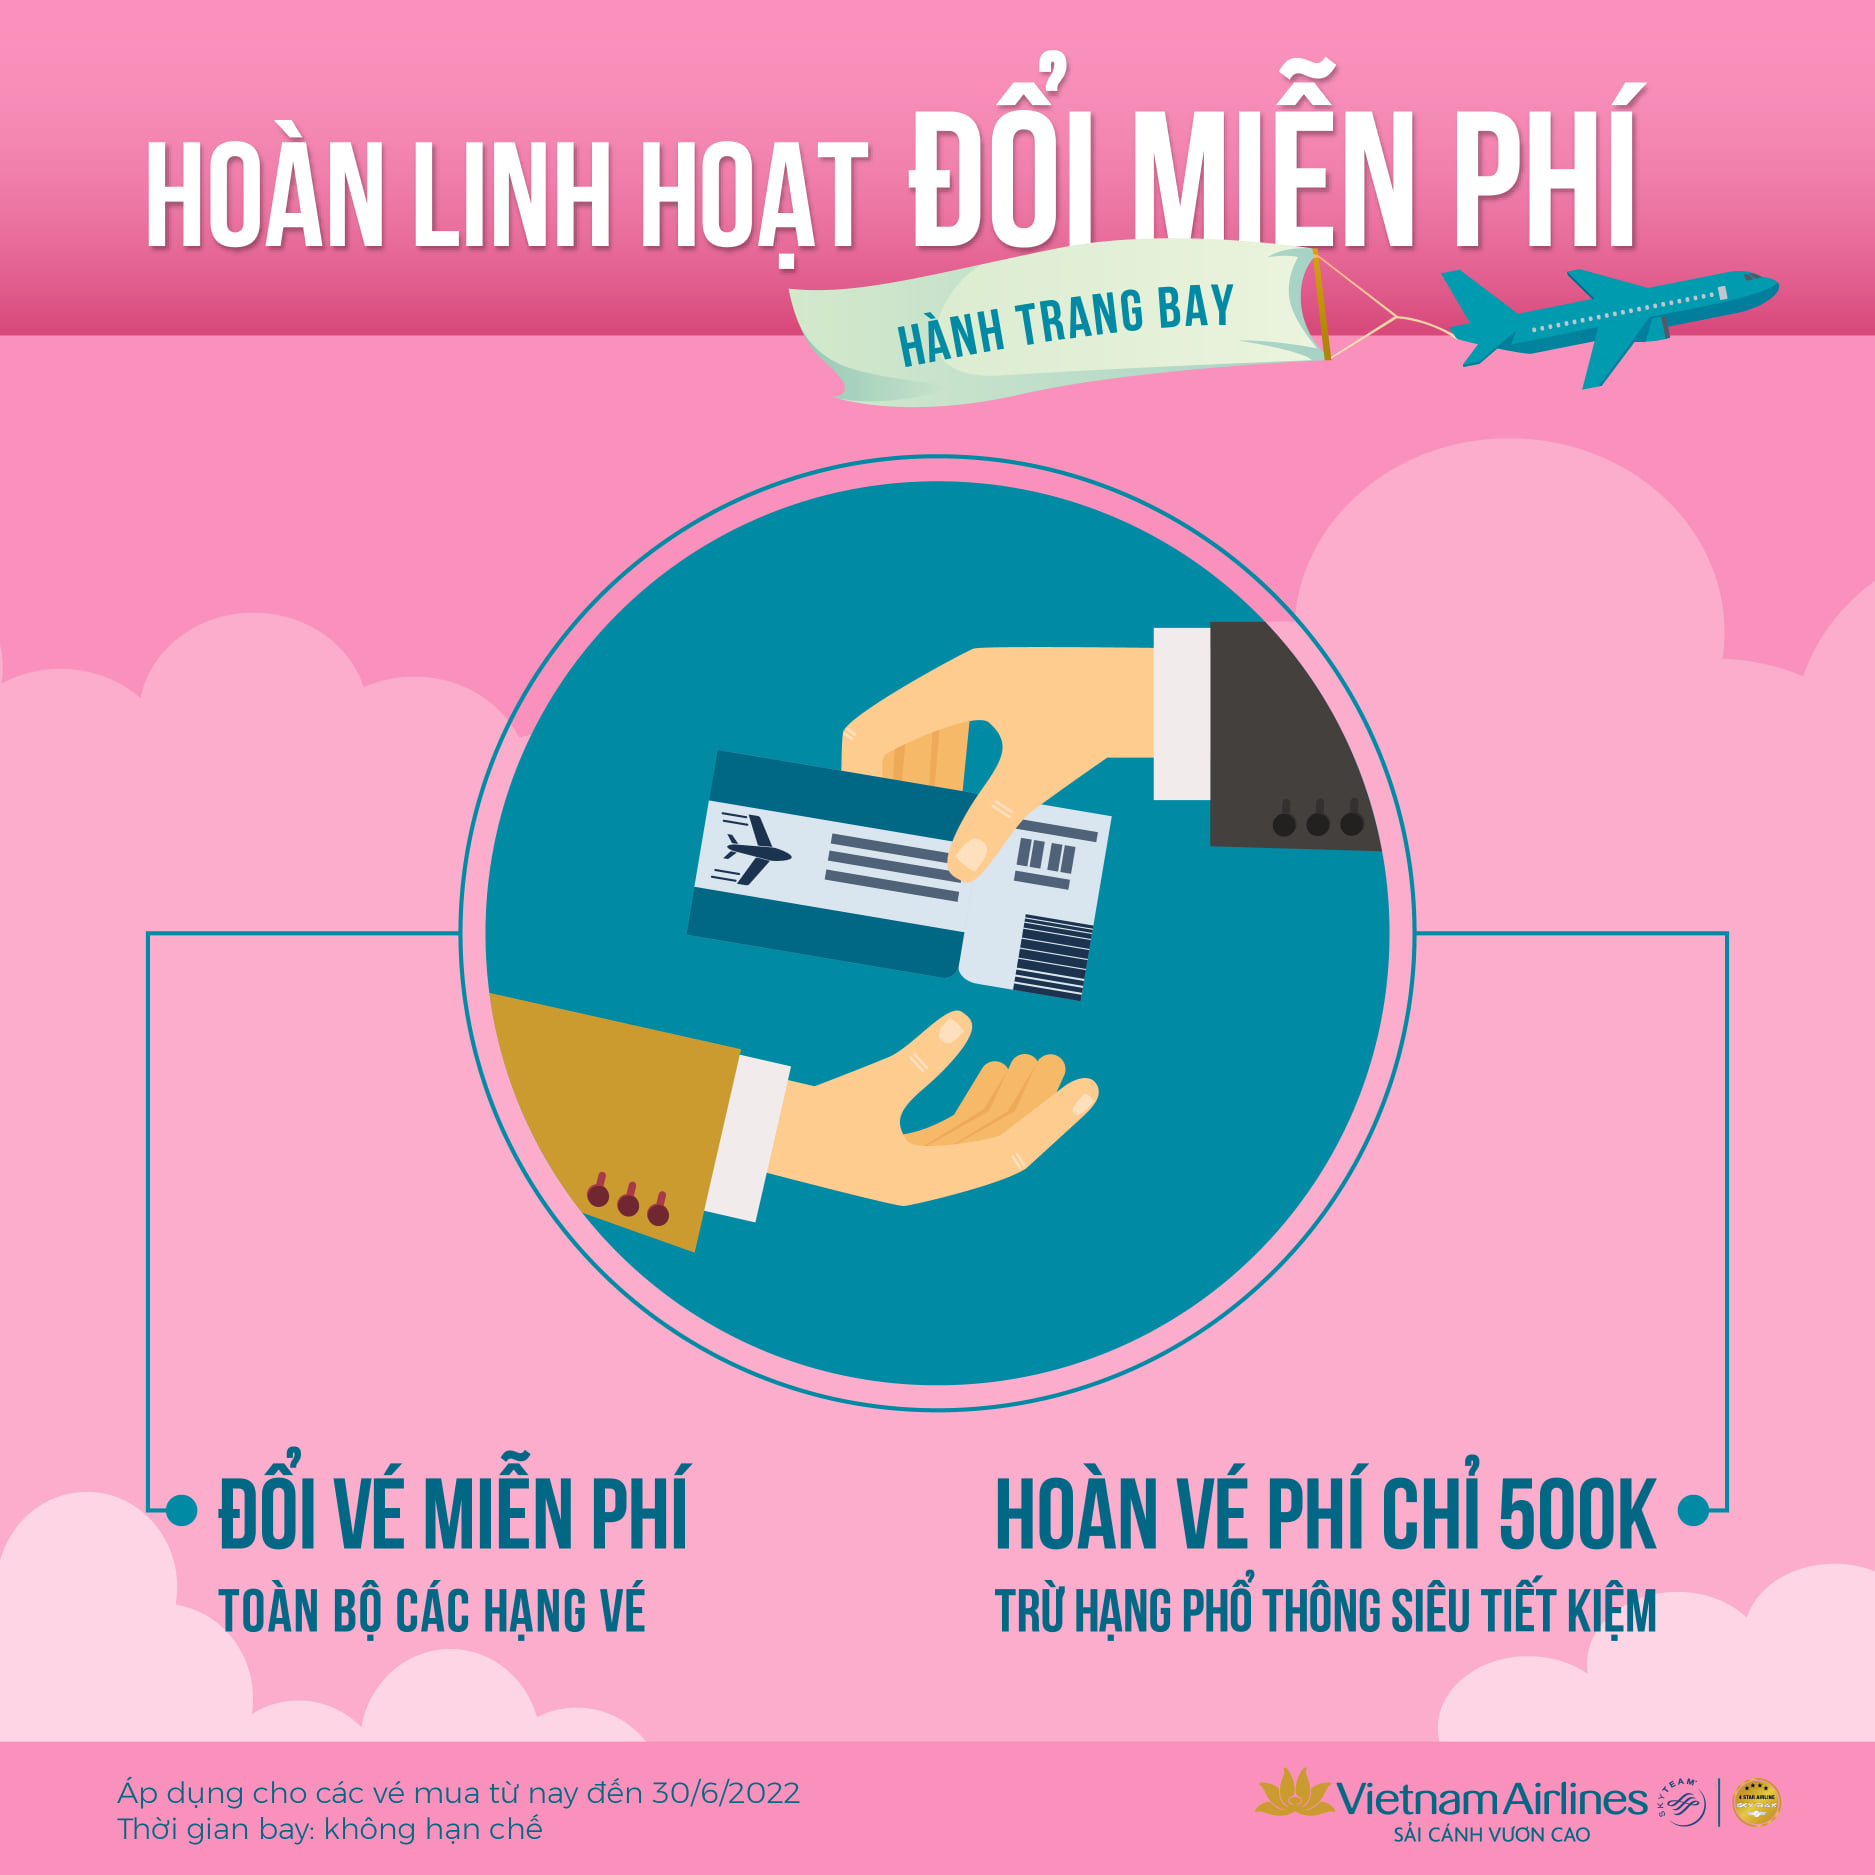 Chính sách hoàn. đổi vé của Vietnam Airlines